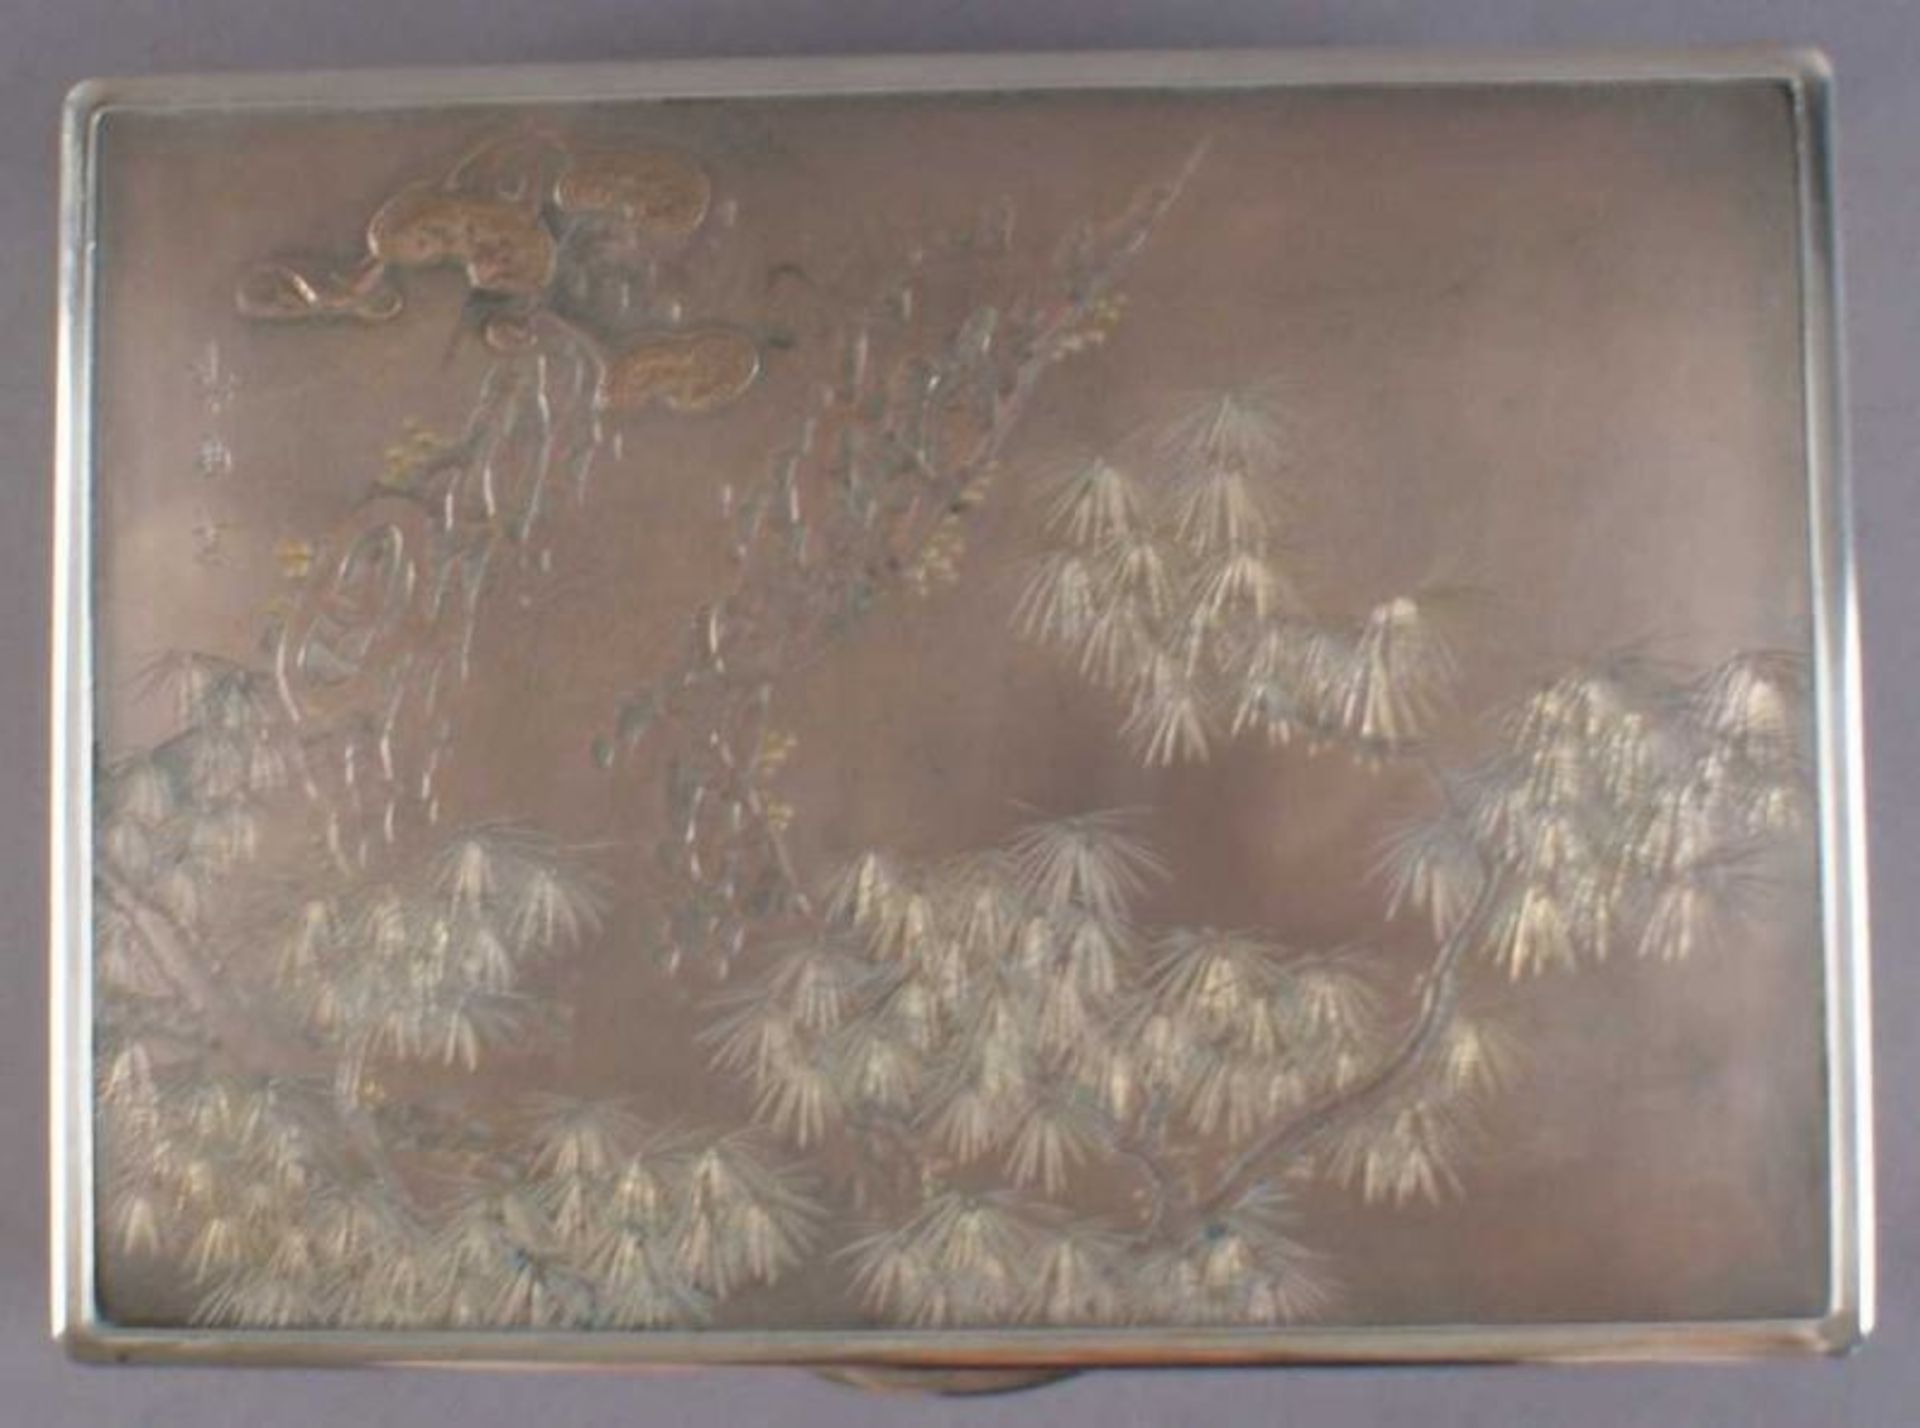 SILBERSCHATULLE Japan, um 1920, Silberschatulle mit Spuren im Schnee auf Korpus, bezeichnet wohl mit